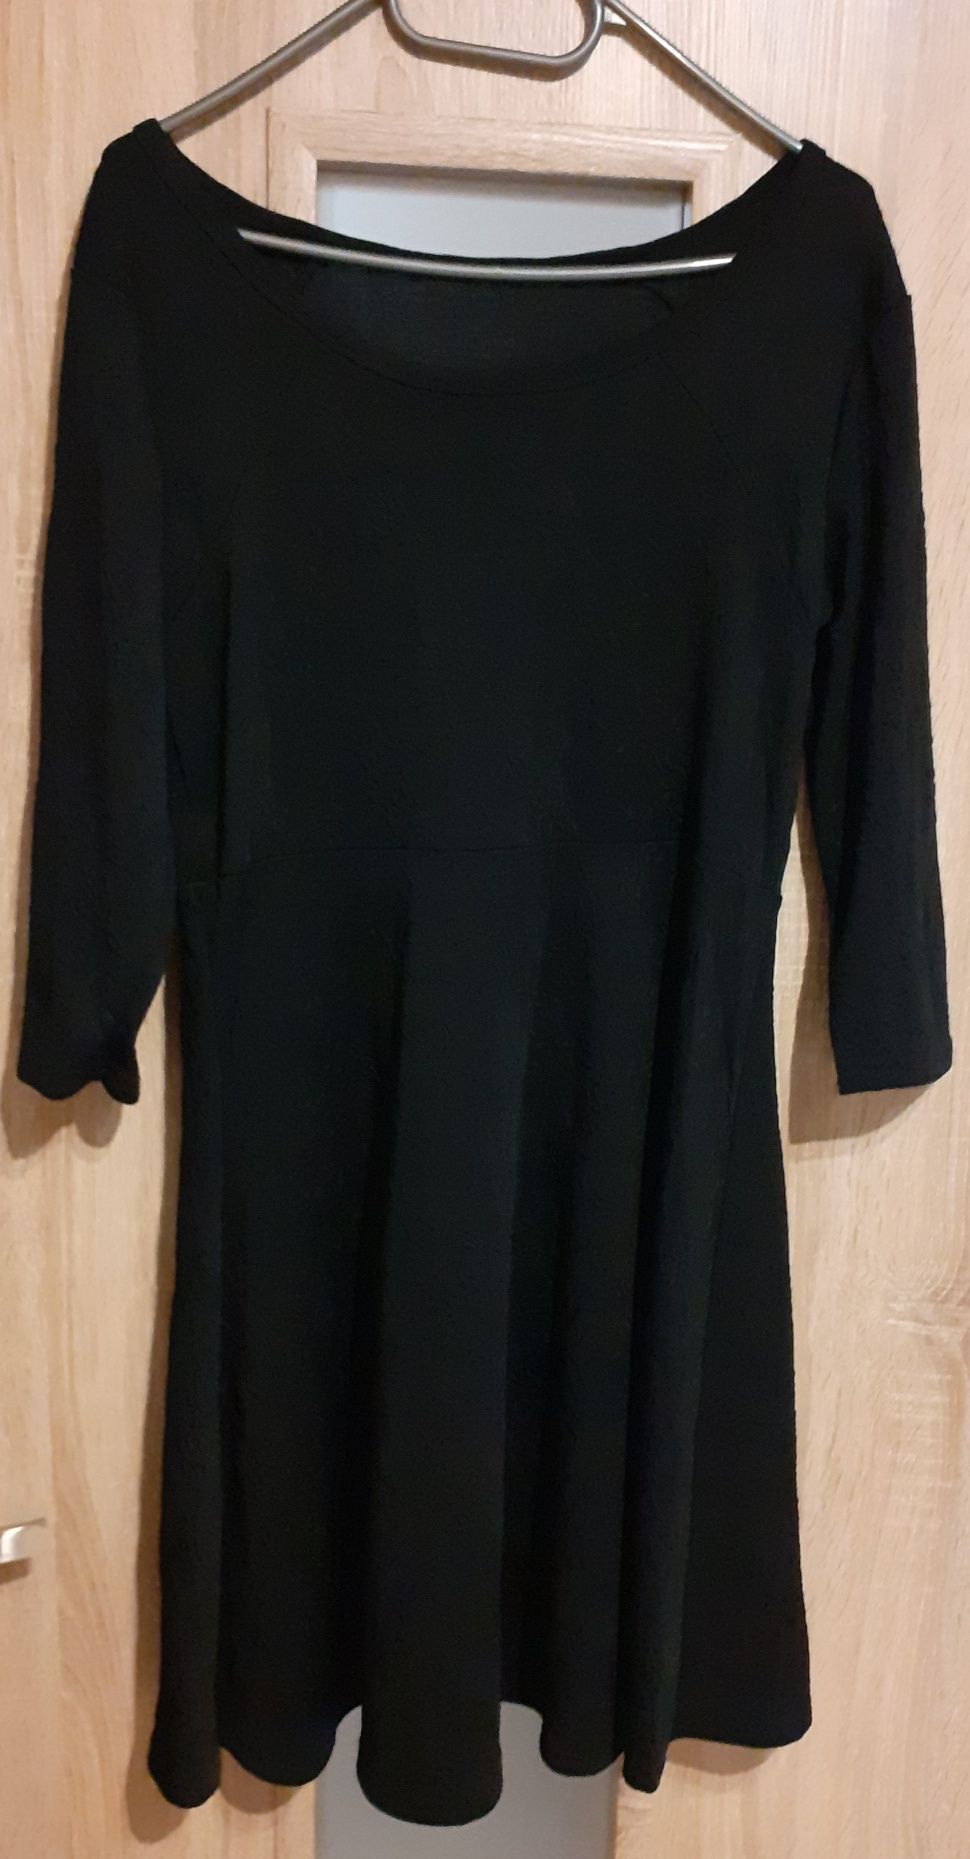 Nowa czarna sukienka